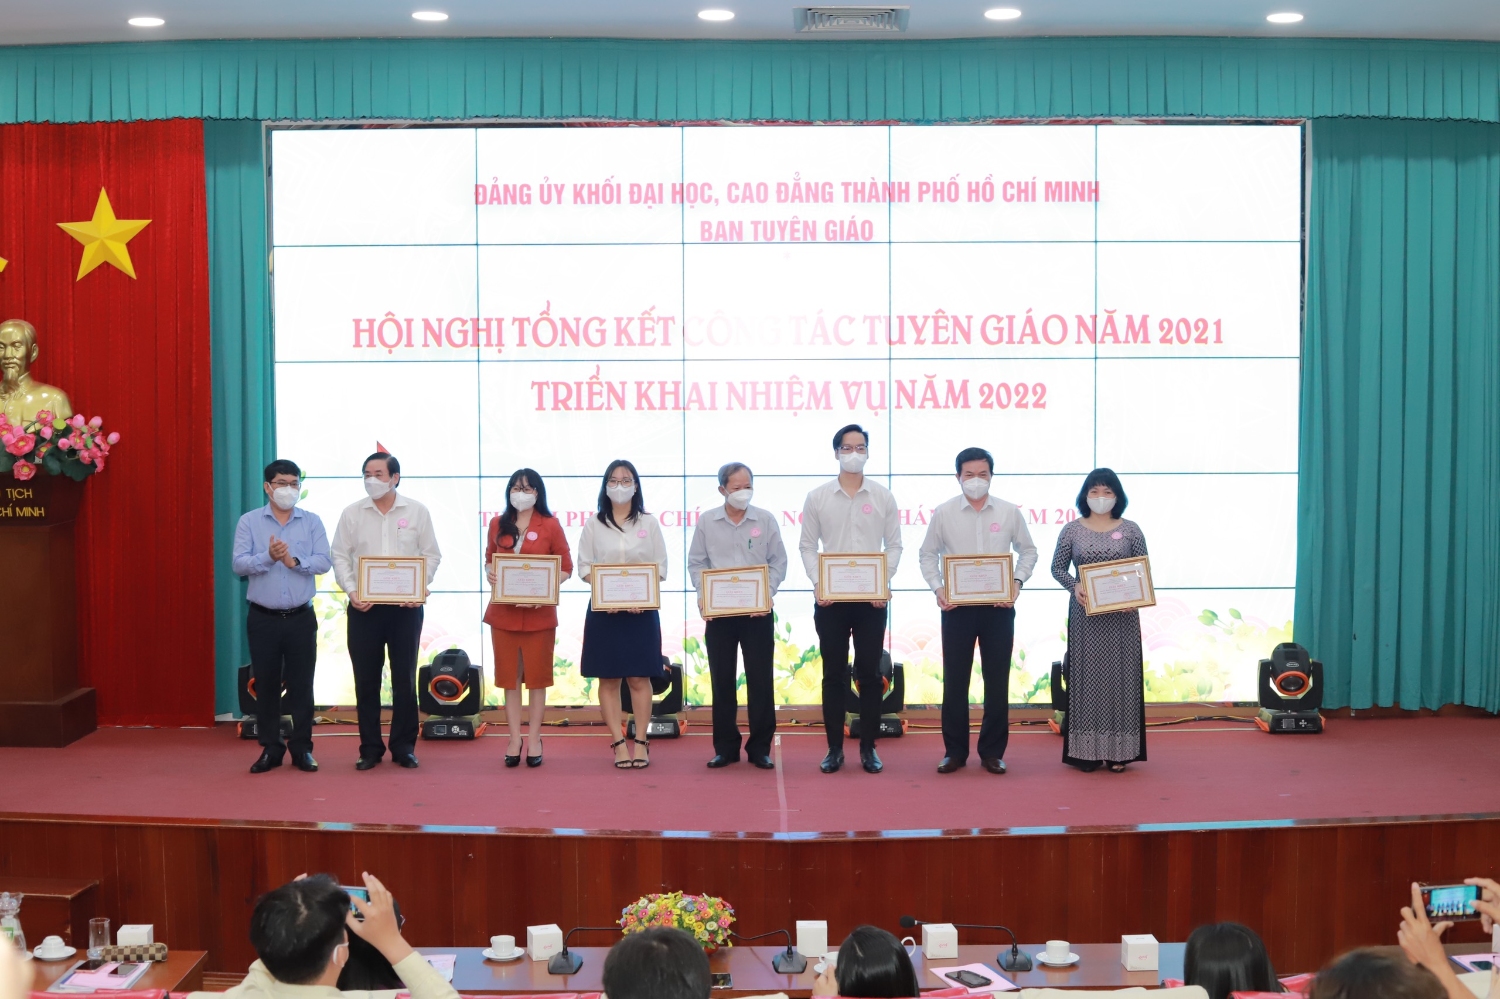 Đồng chí Phạm Thanh Sơn, Phó Trưởng Phòng Khoa giáo Ban Tuyên giáo Thành ủy chúc mừng các tập thể hoàn thành xuất sắc công tác tuyên giáo năm 2021